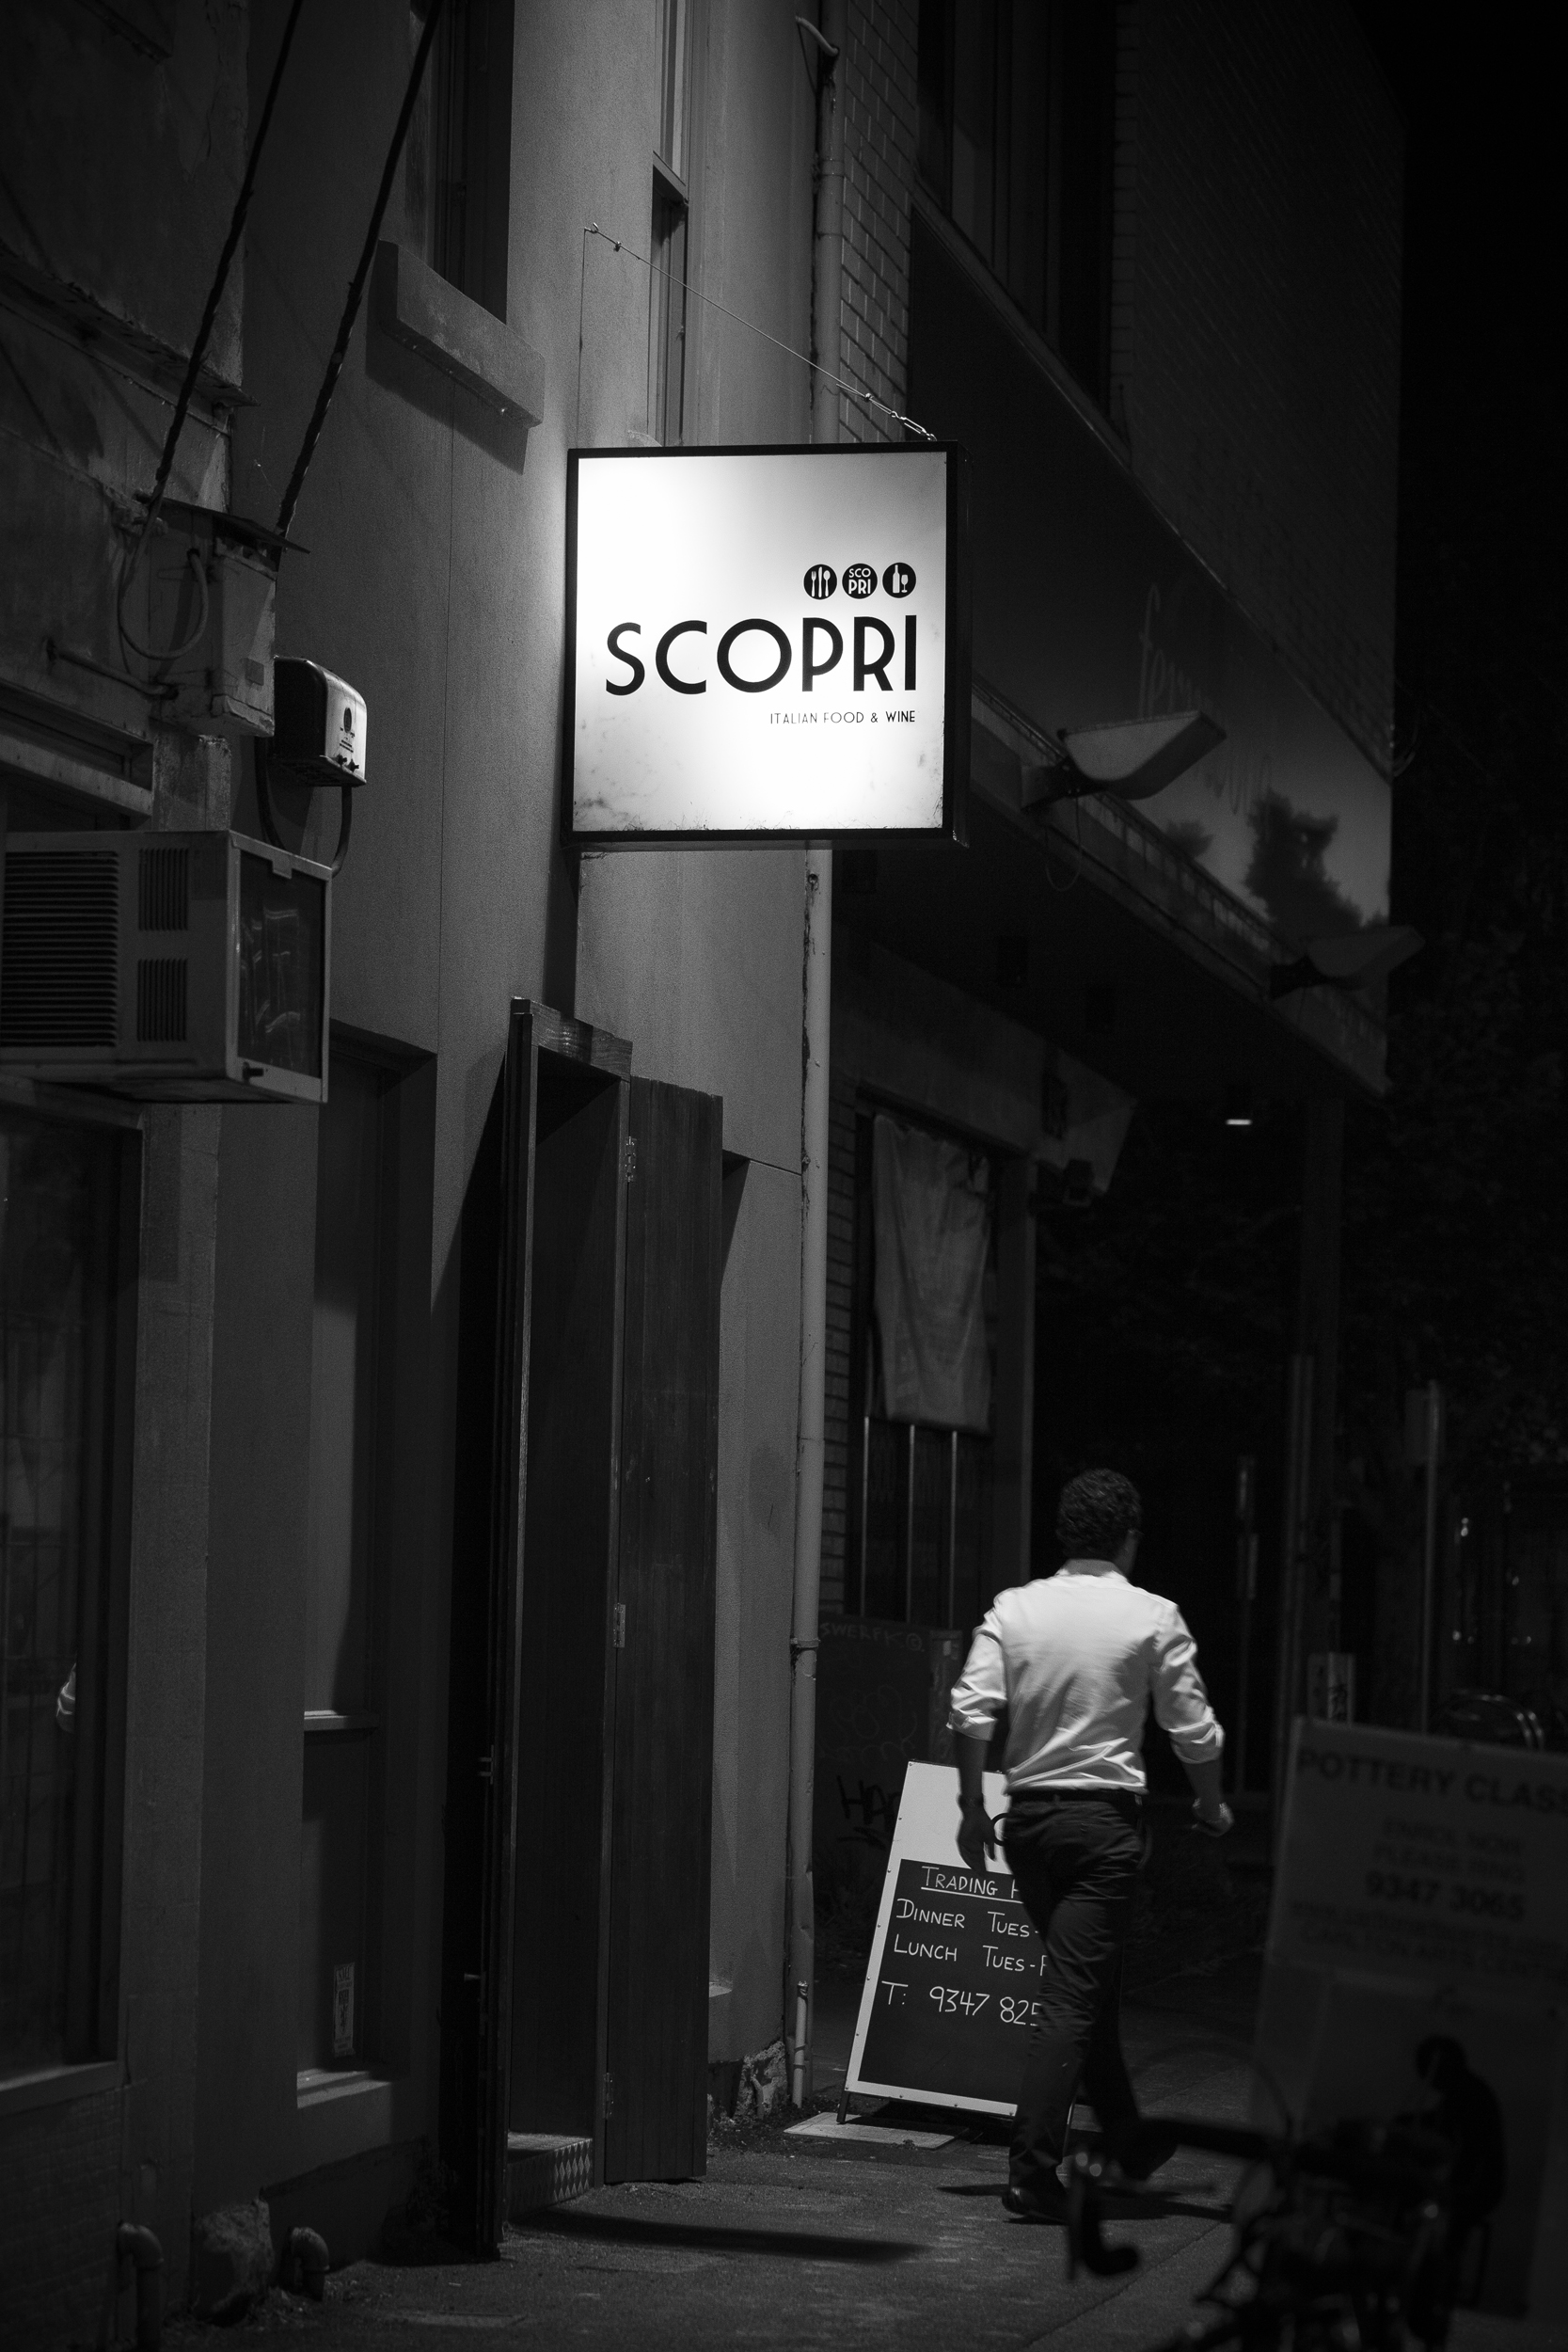 Scopri Italian Restaurant 